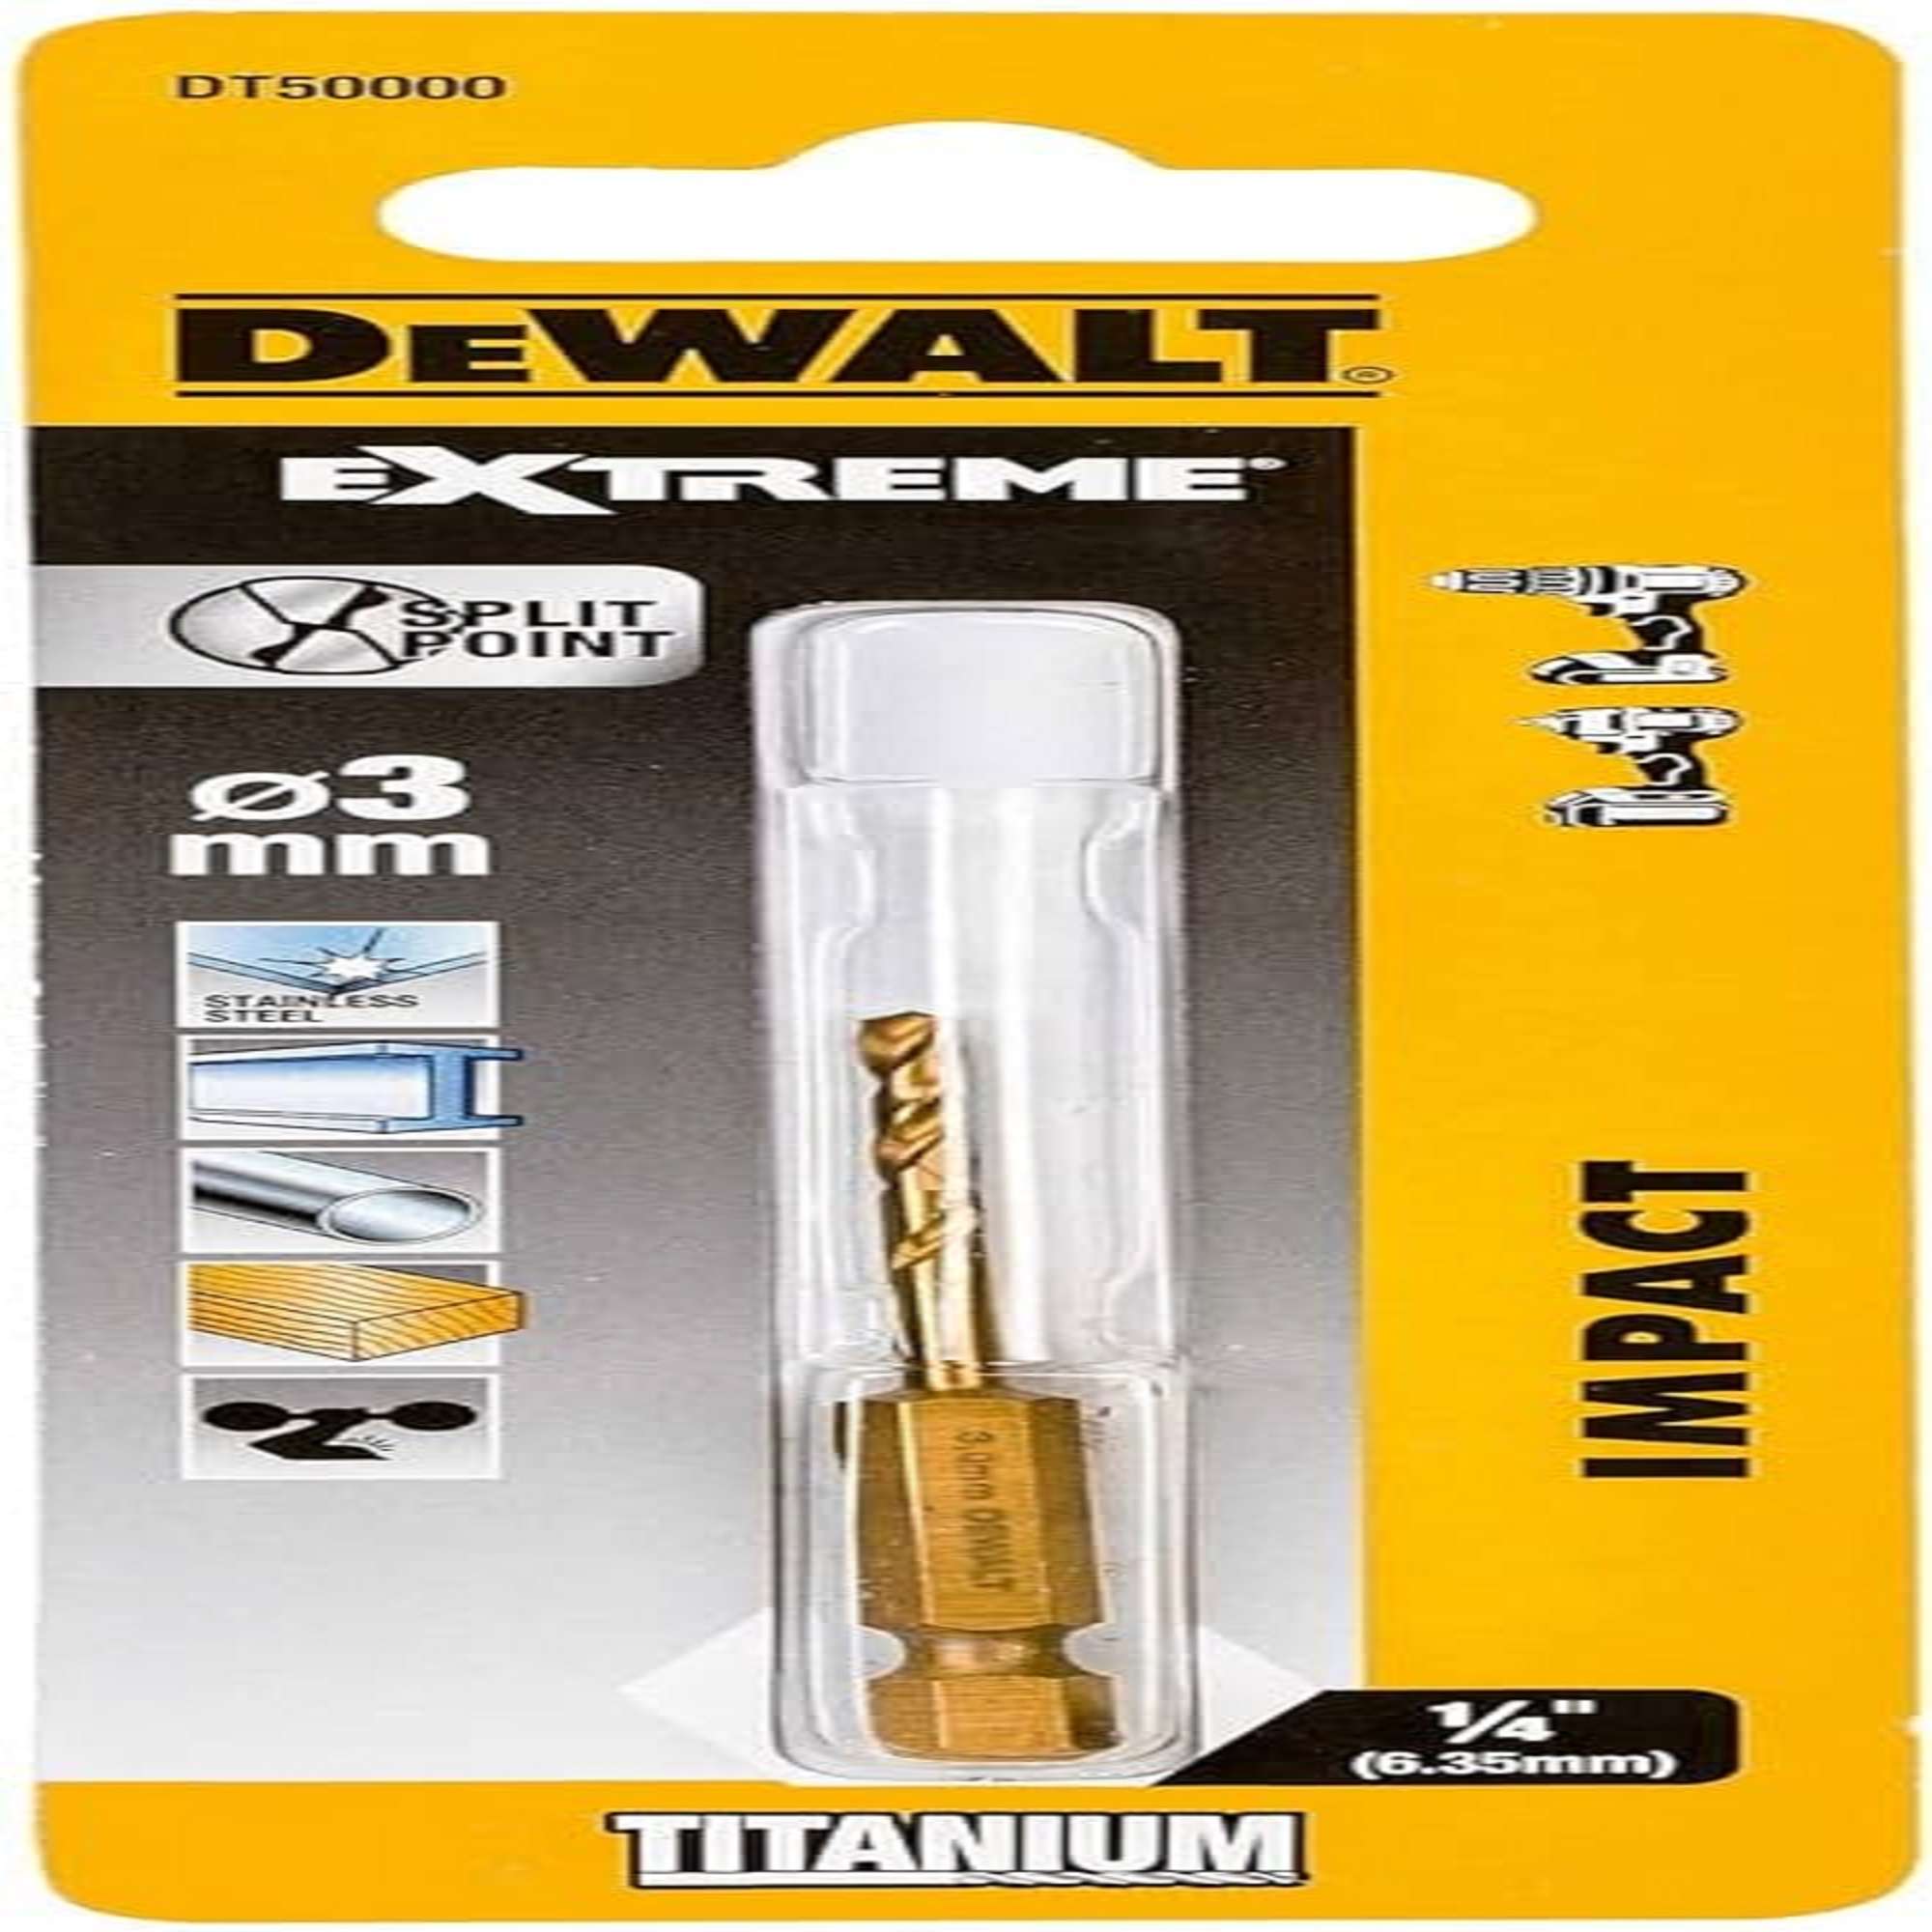 DEWALT DT50000-QZ METAL drill bit